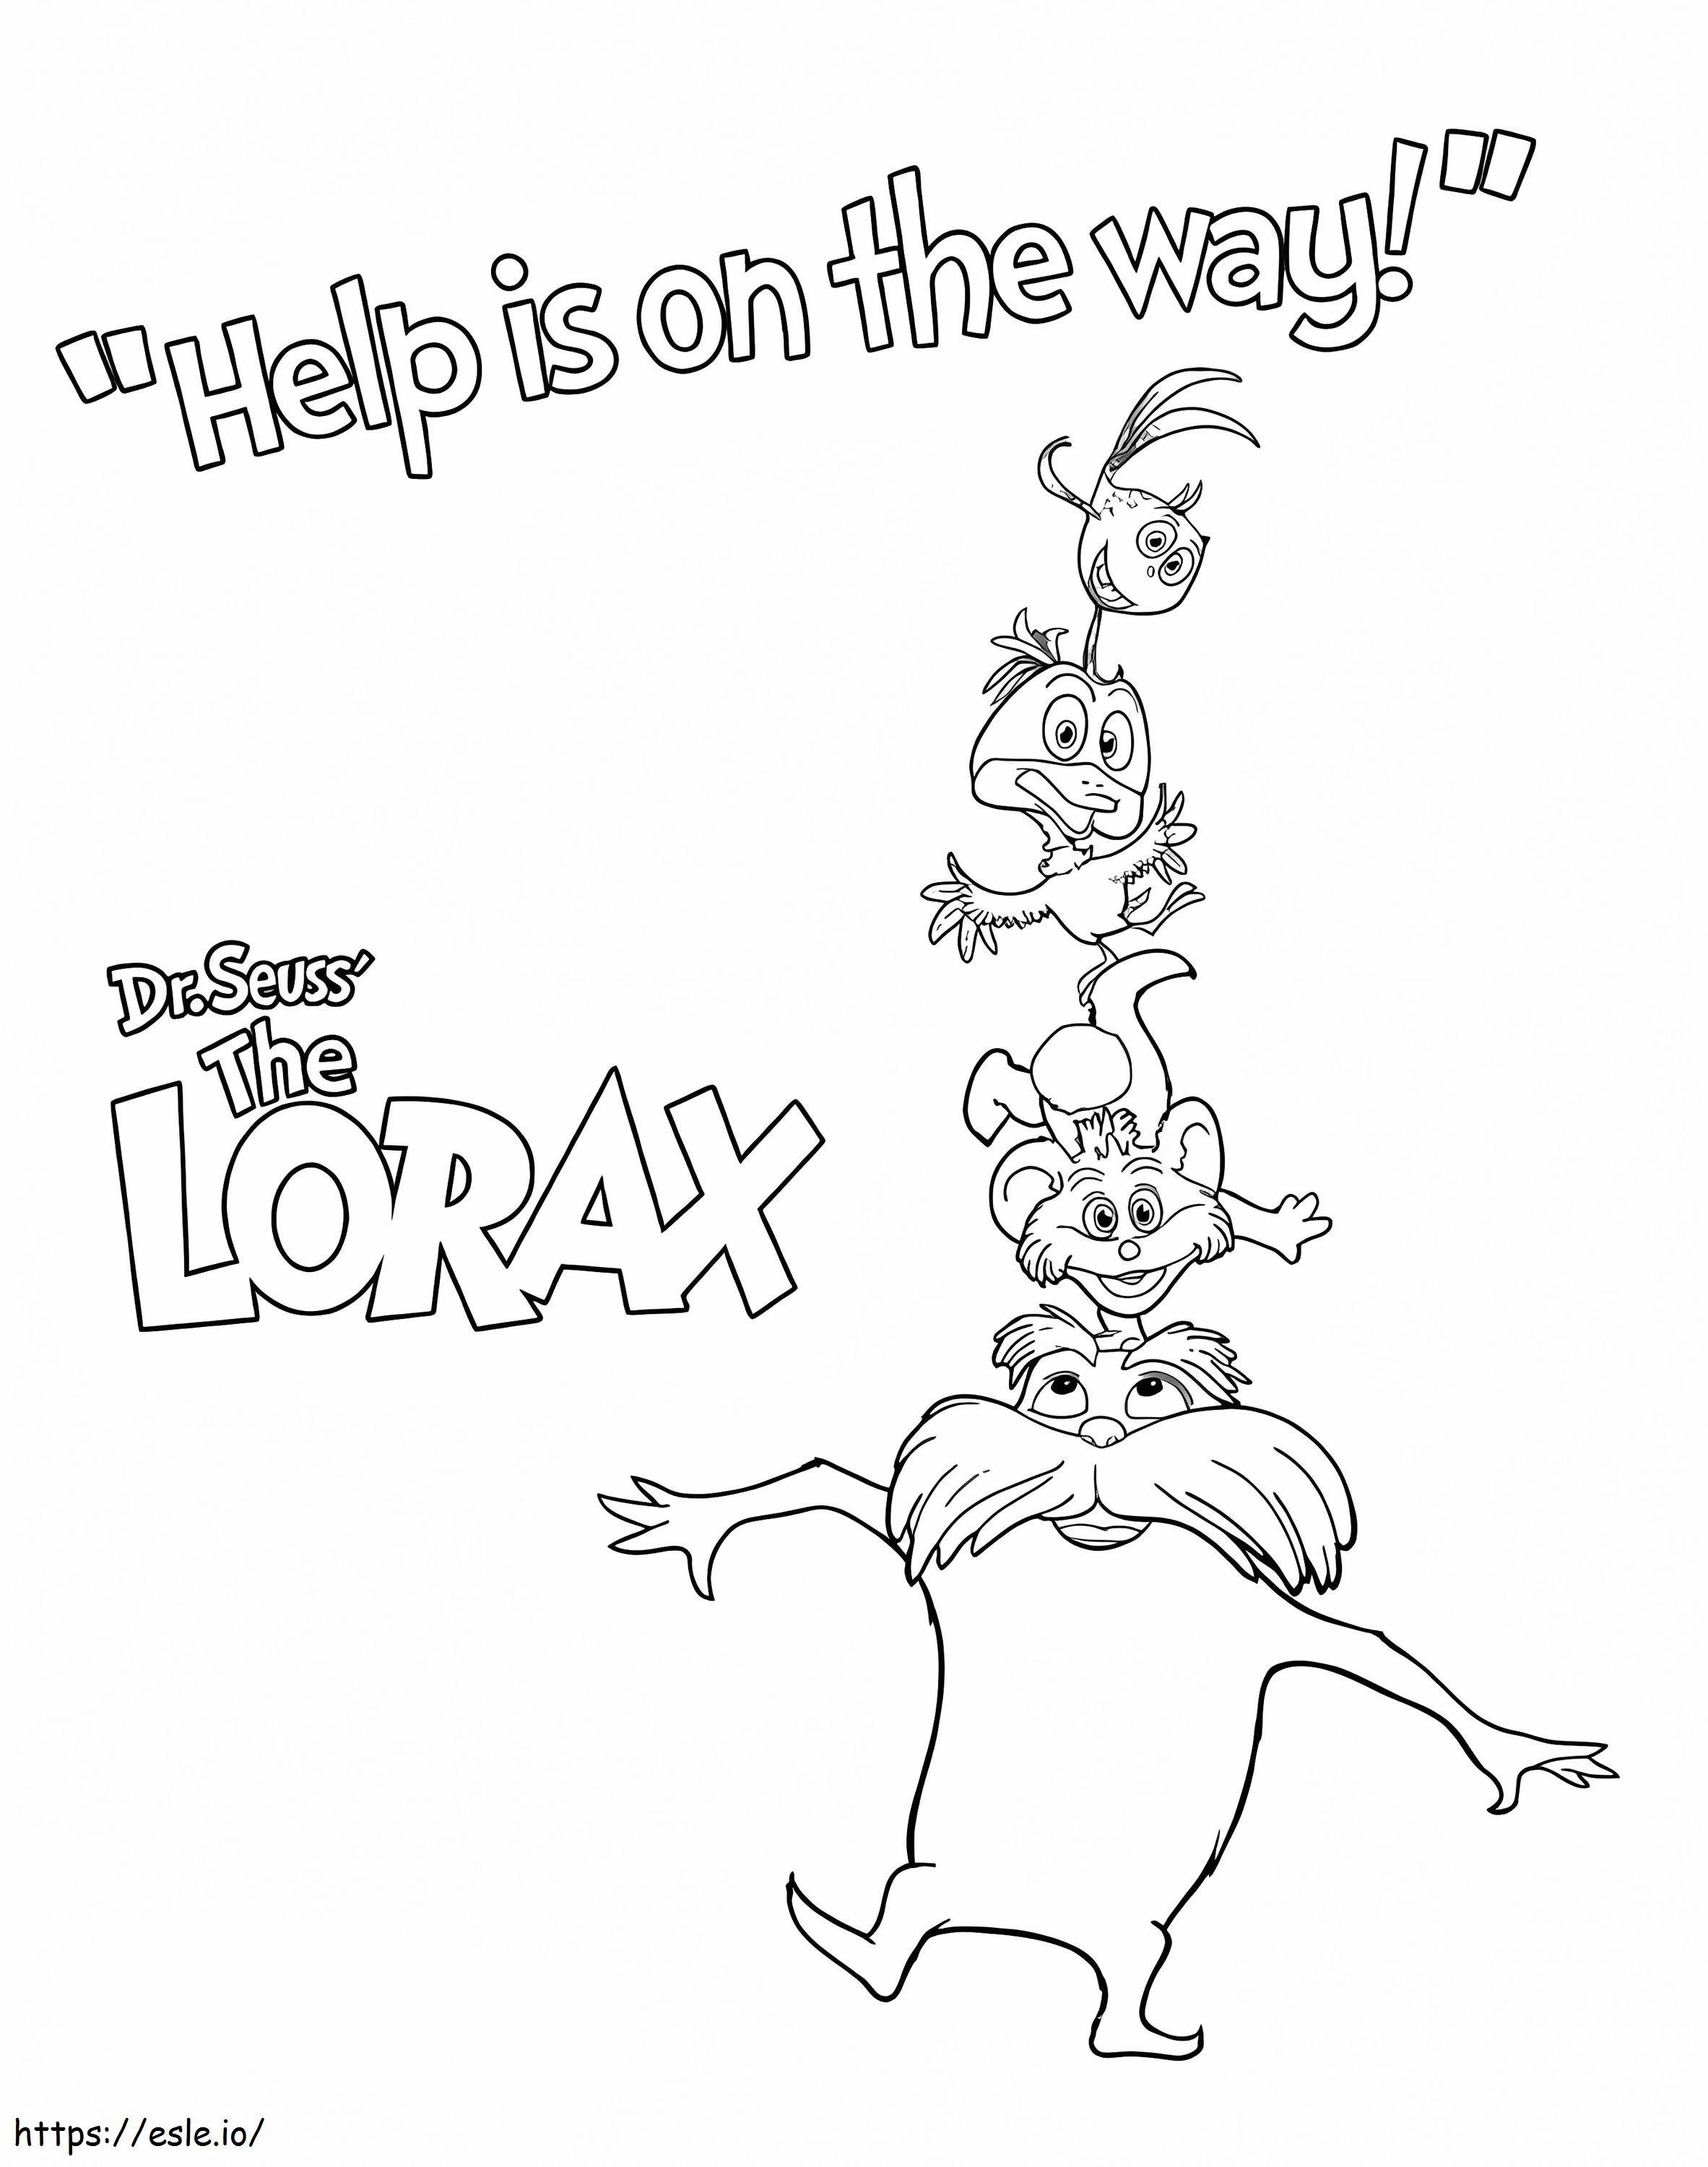 Personagens do Lorax para colorir